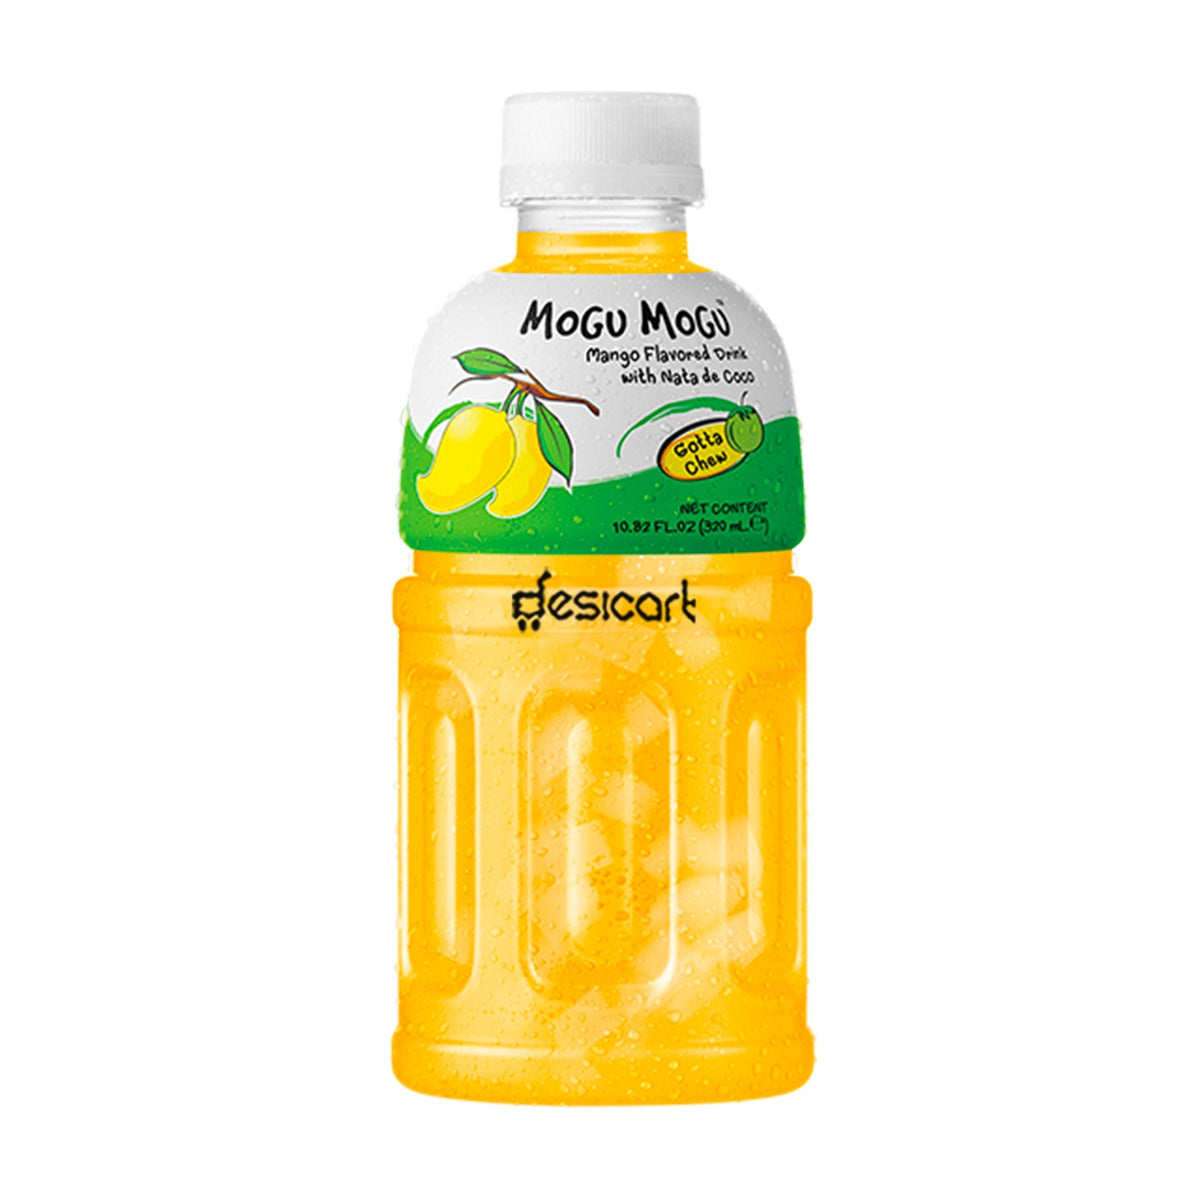 MOGU MOGU MANGO FLAVOURED DRINK 320ML